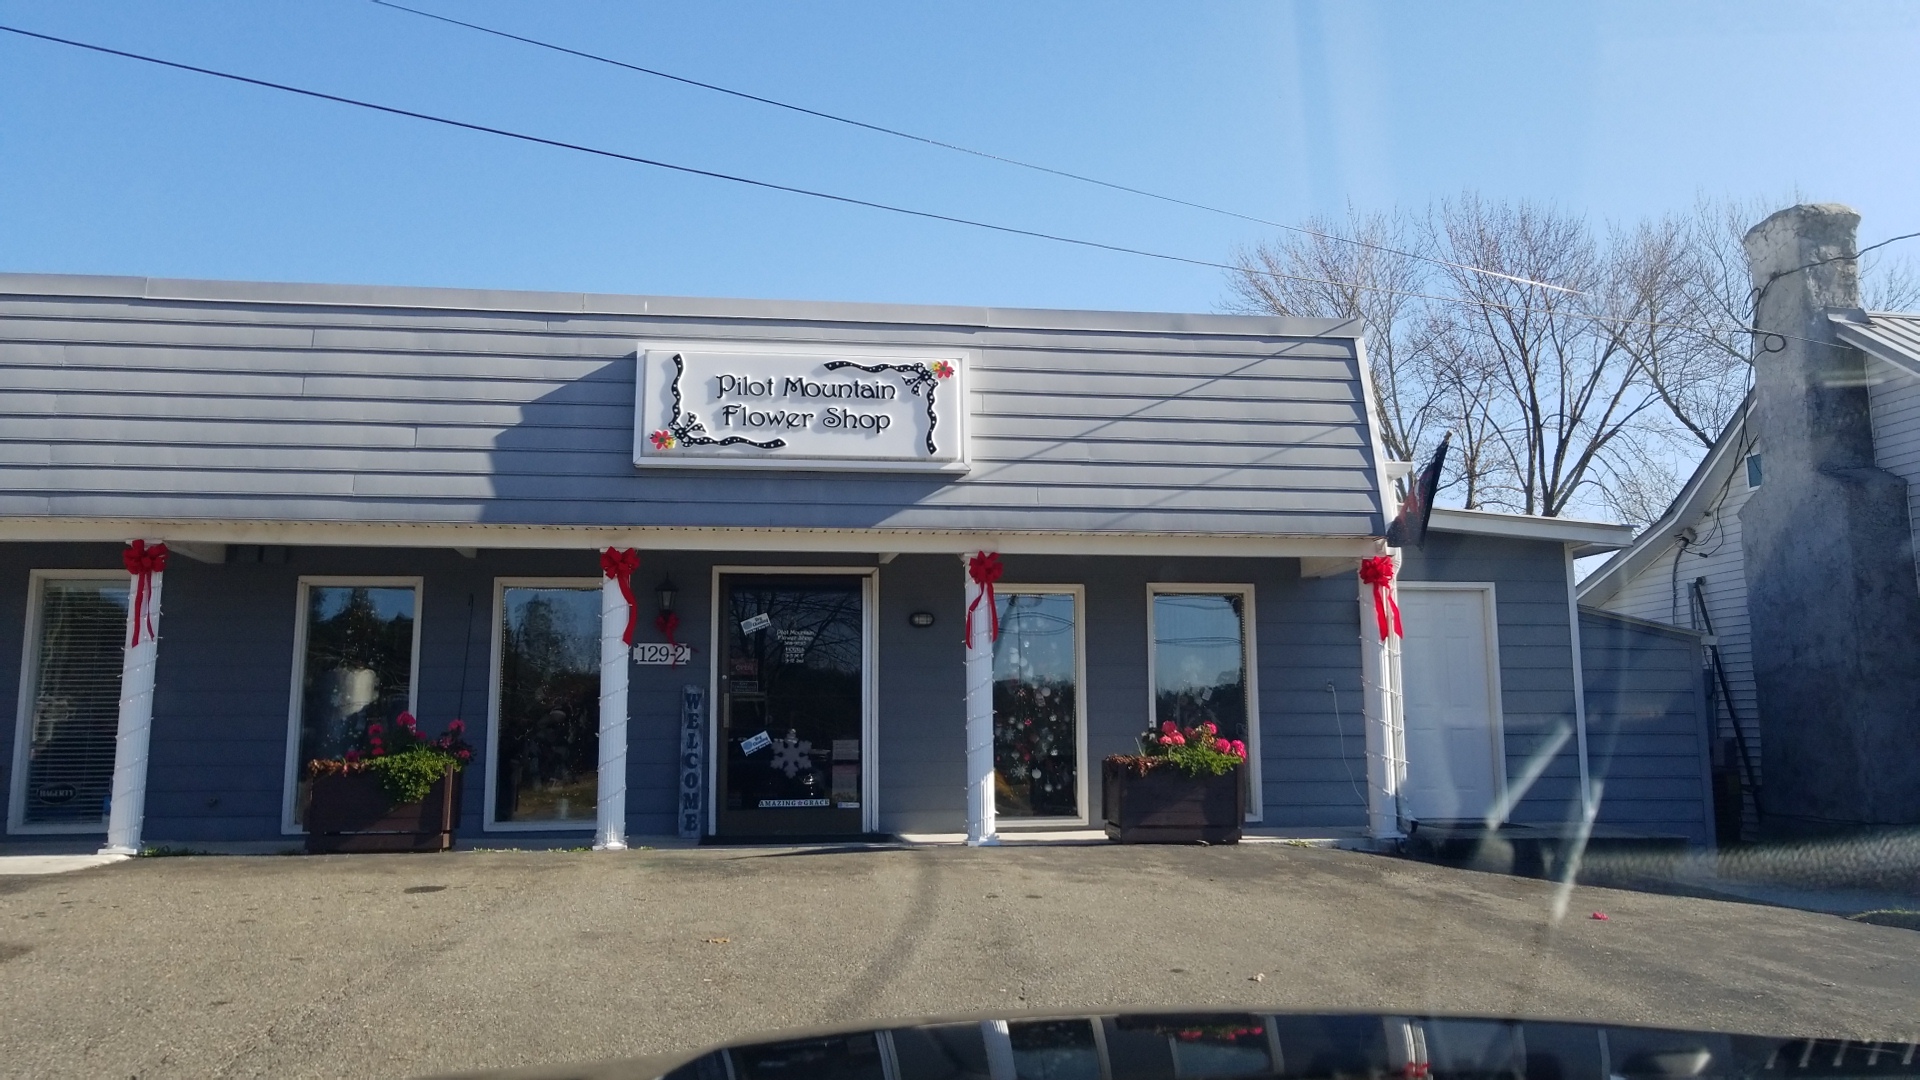 Pilot Mountain Flower Shop